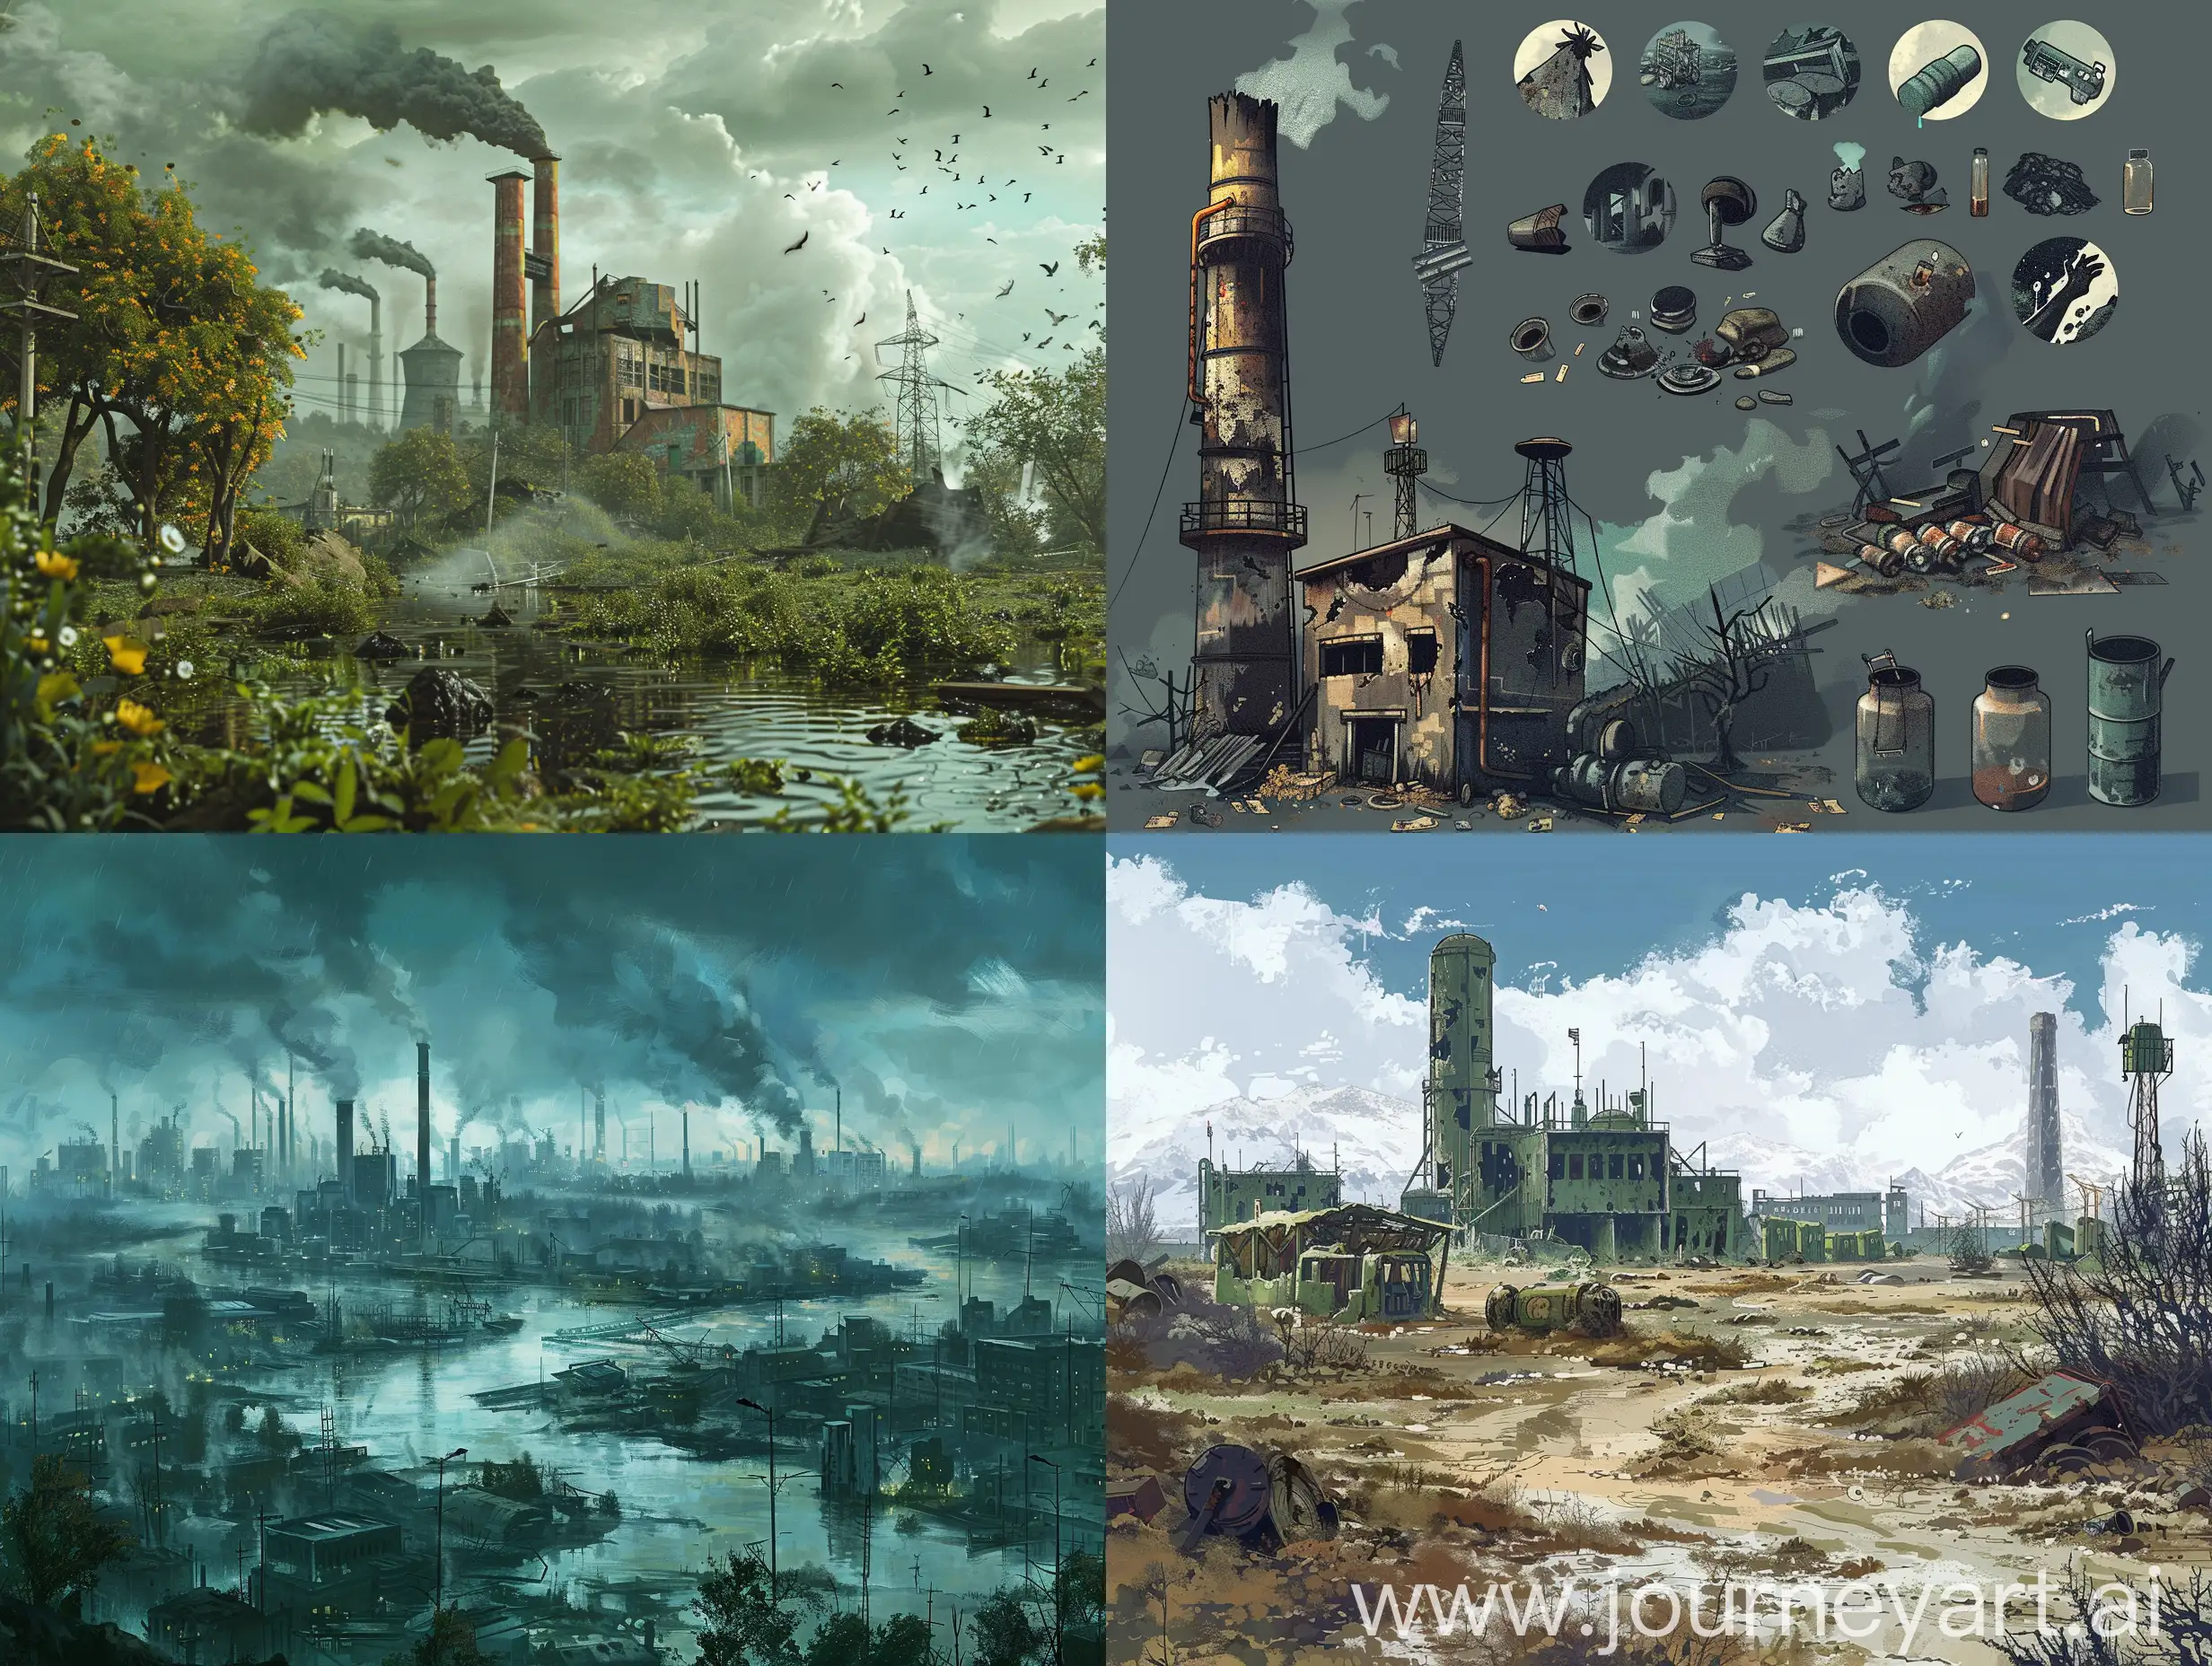 请创造末日废土生存类游戏界面，游戏背景是环境污染、资源枯竭